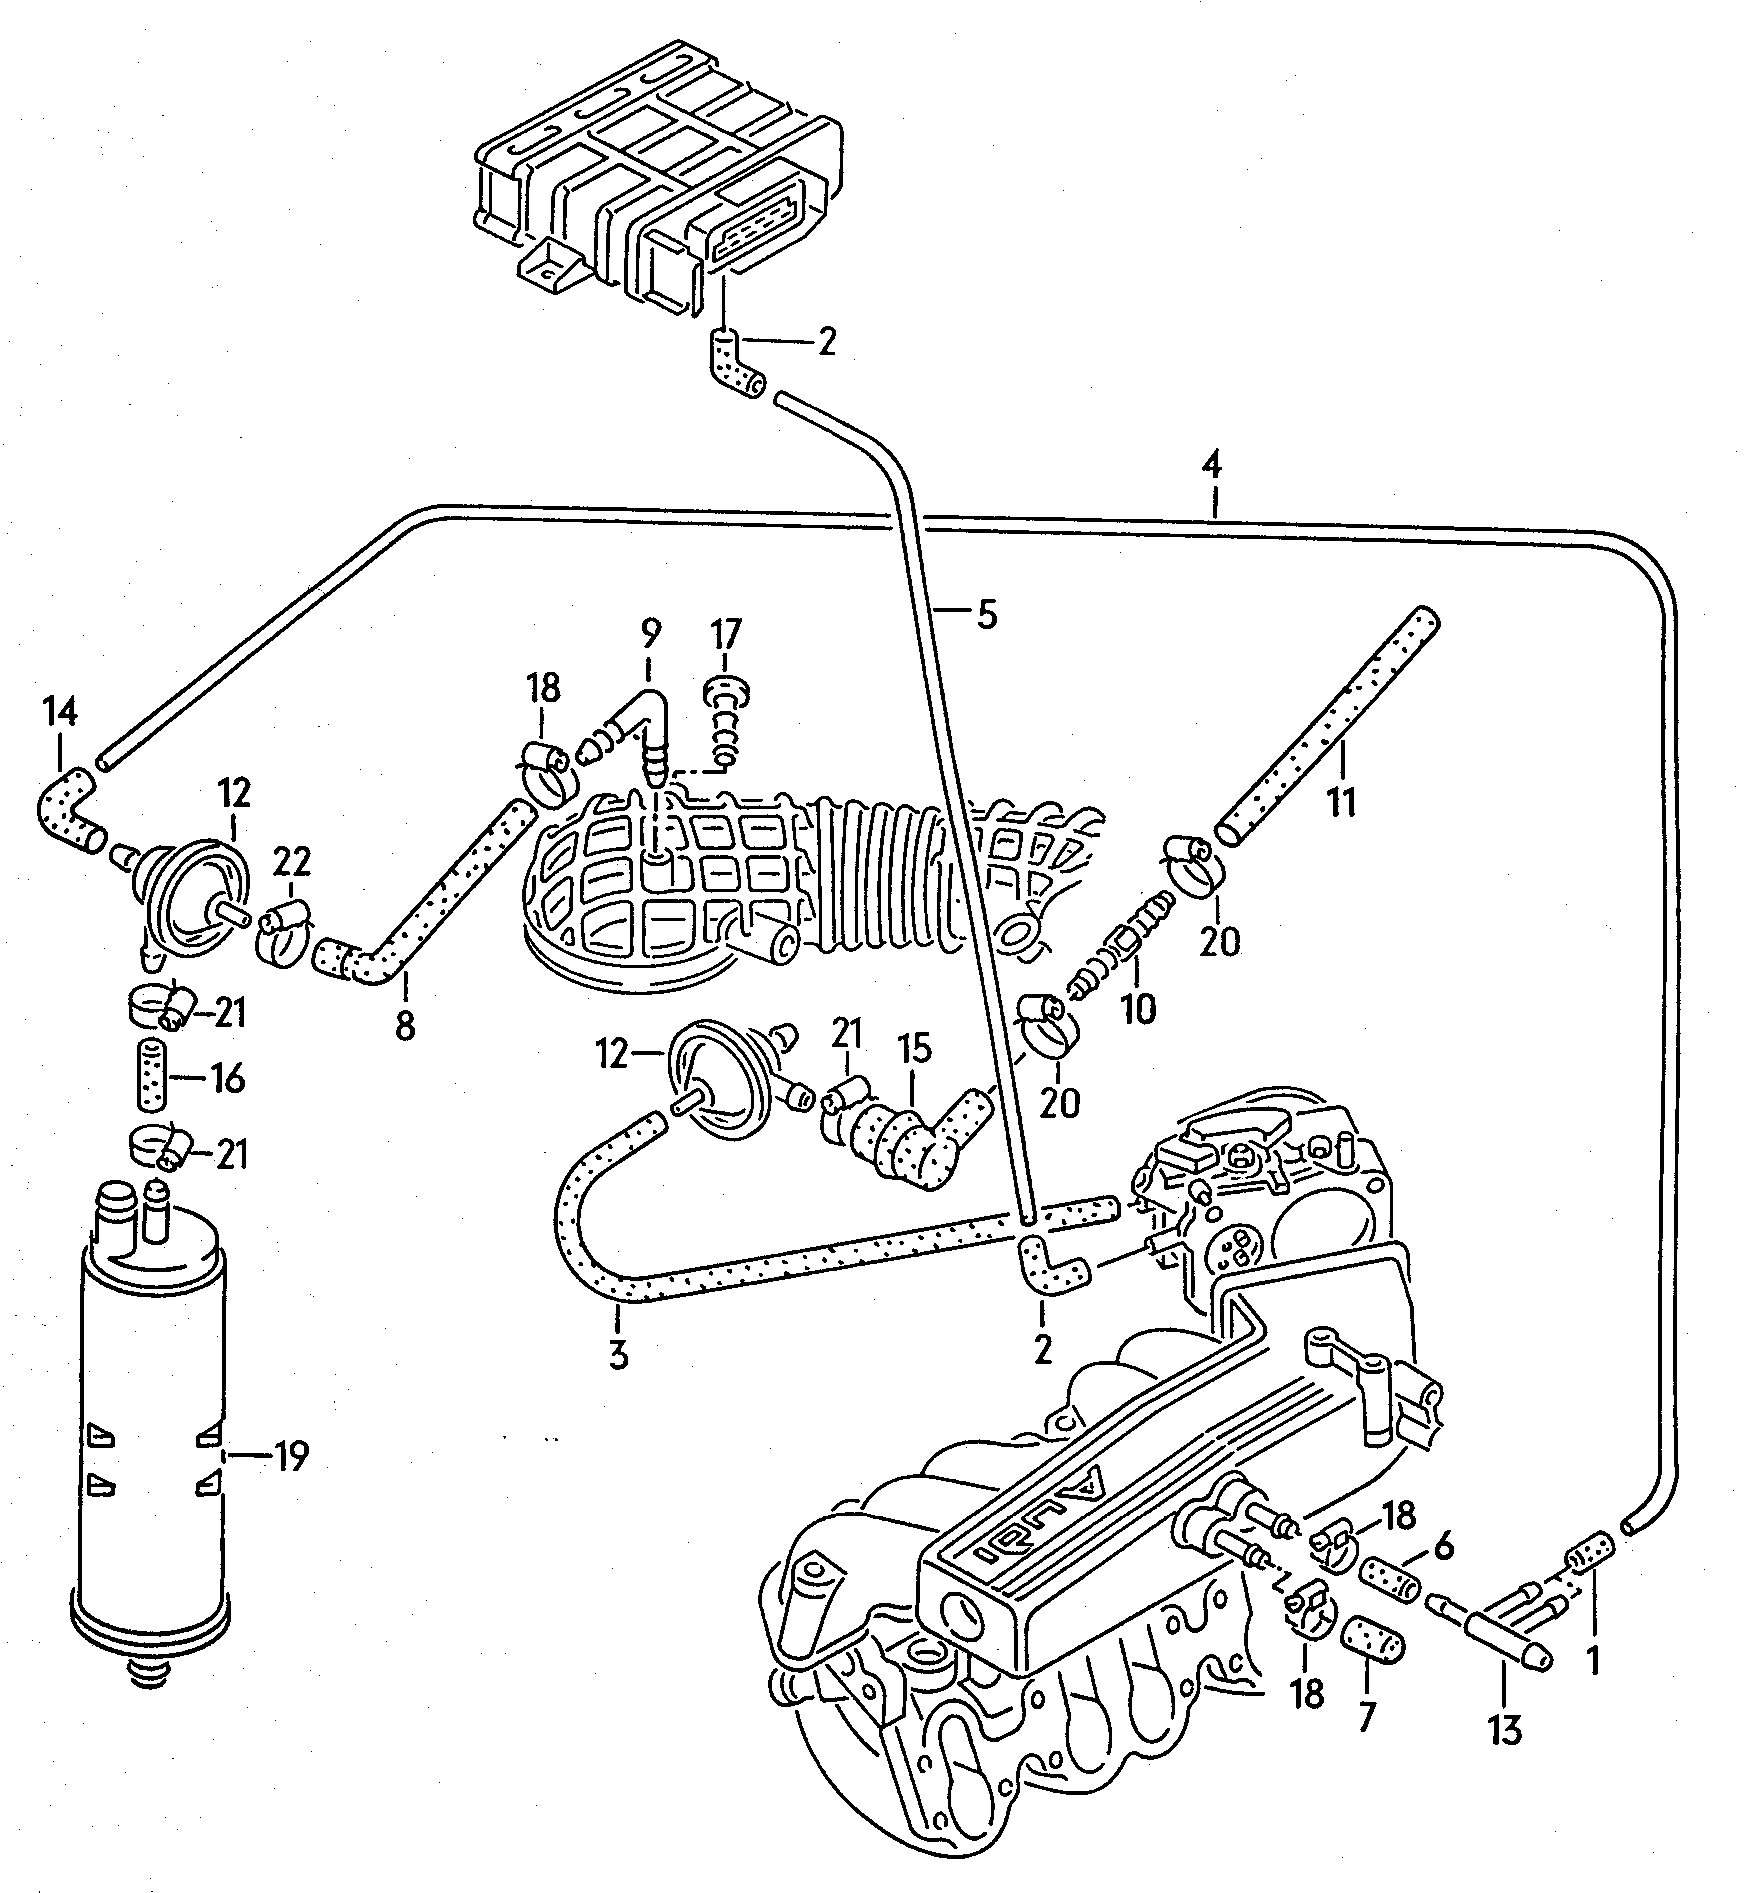 UnterdruckanlageAktivkohlefilteranlagefür Fahrzeuge mit Katalysator 2,0Ltr. - Audi 100/Avant - a100